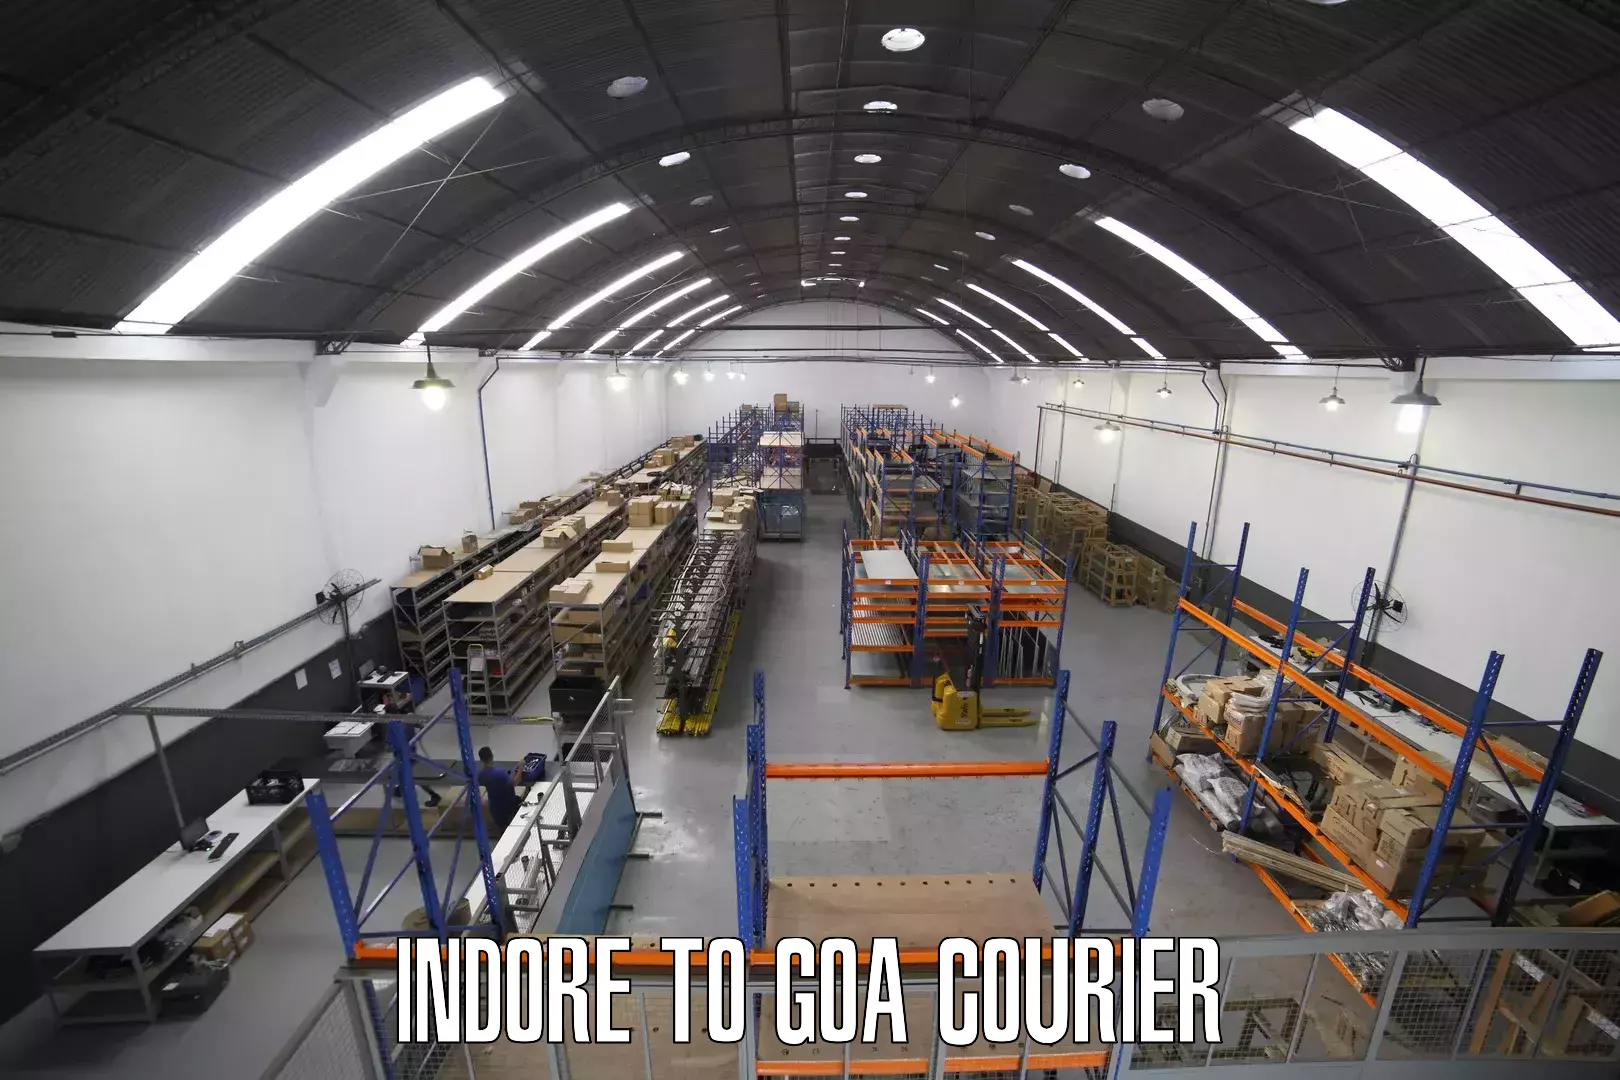 Doorstep delivery service Indore to IIT Goa